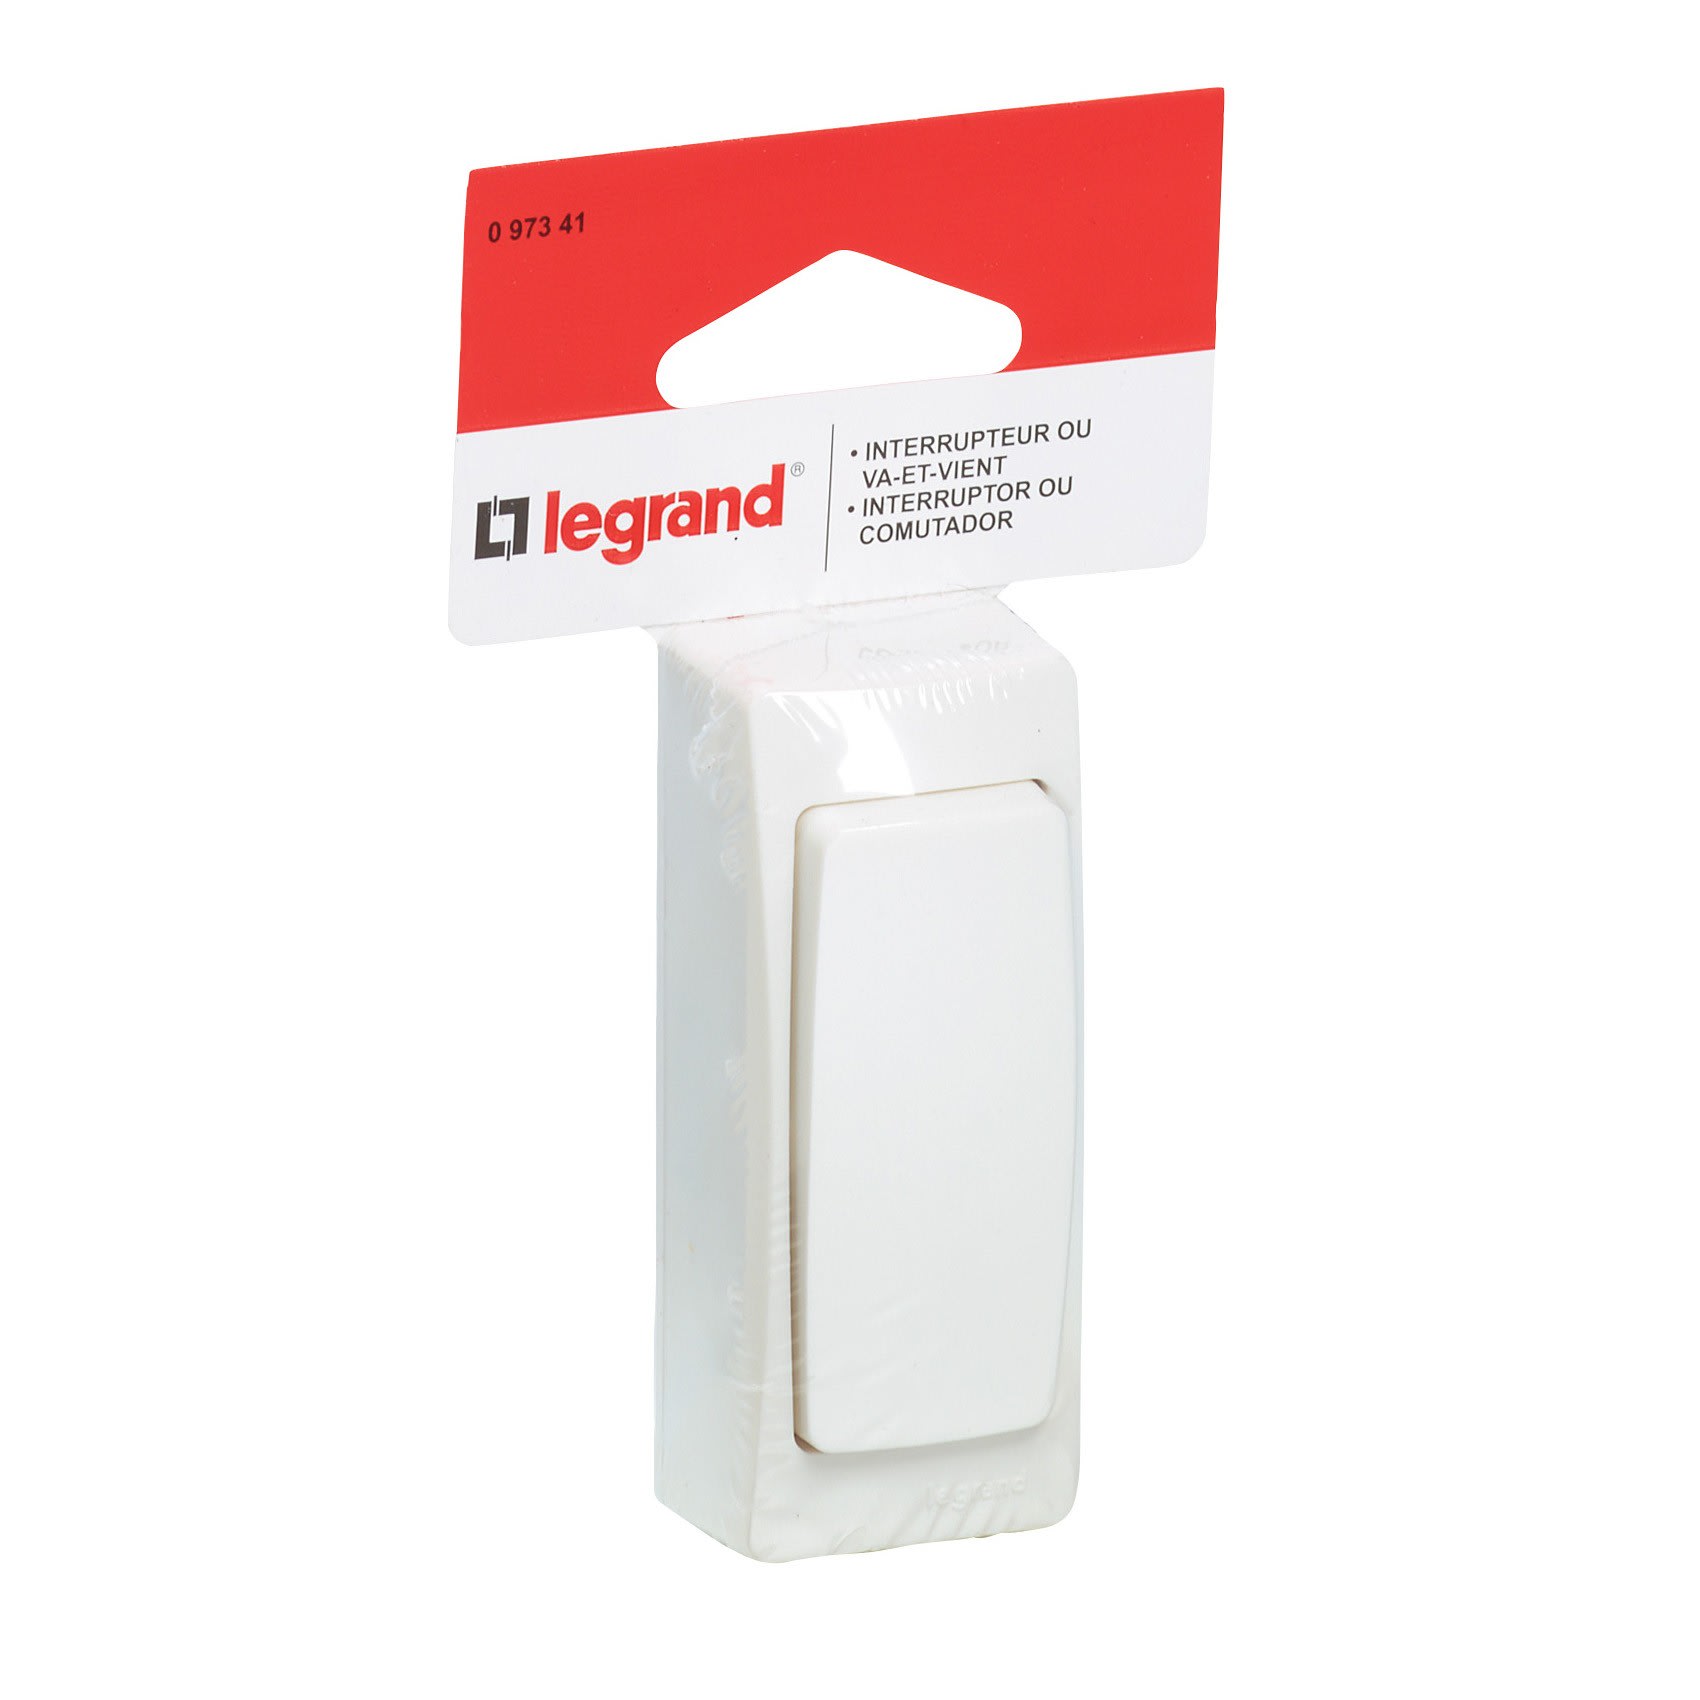 Legrand - Interrupteur va-et-vient appareillage saillie composable - blanc  - Réf: 086101